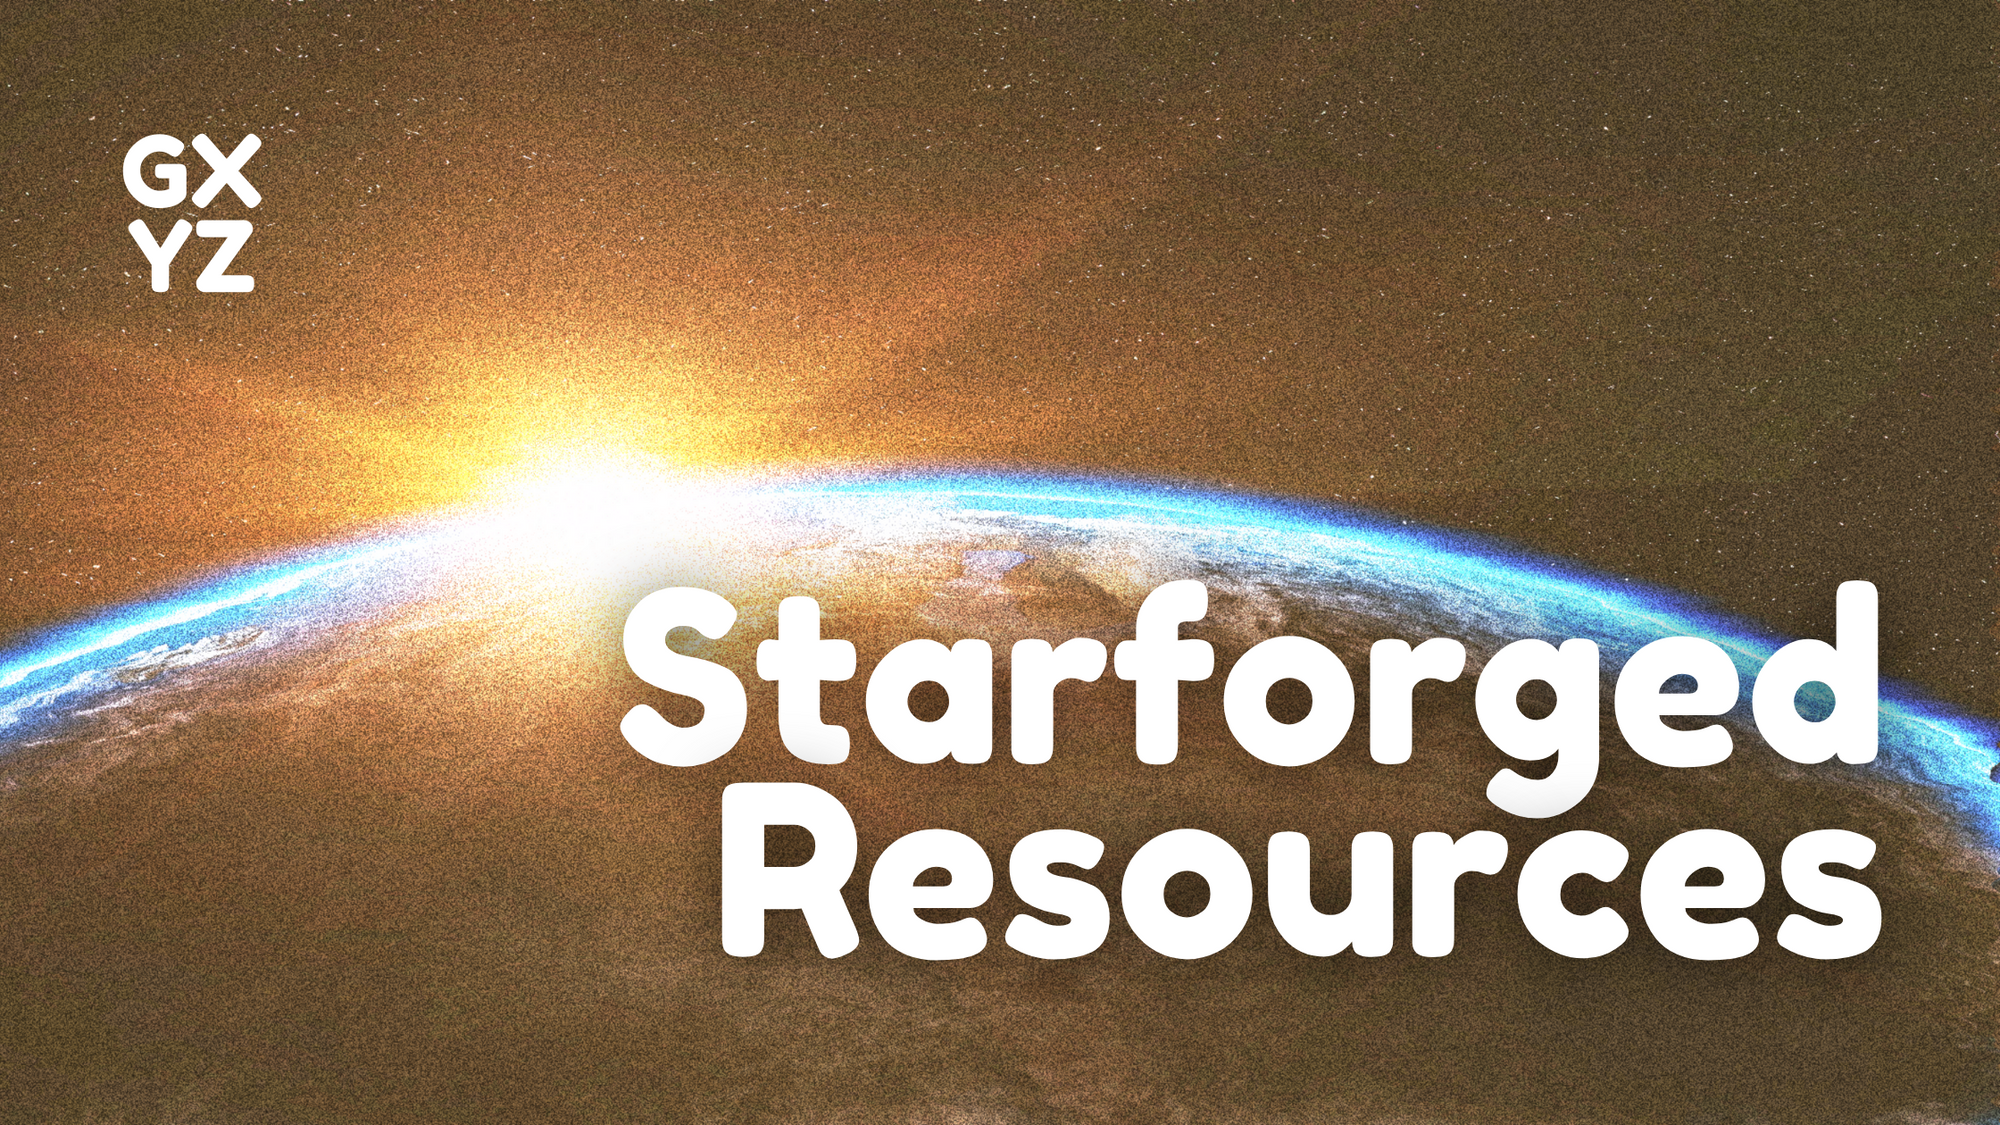 Starforged Resources